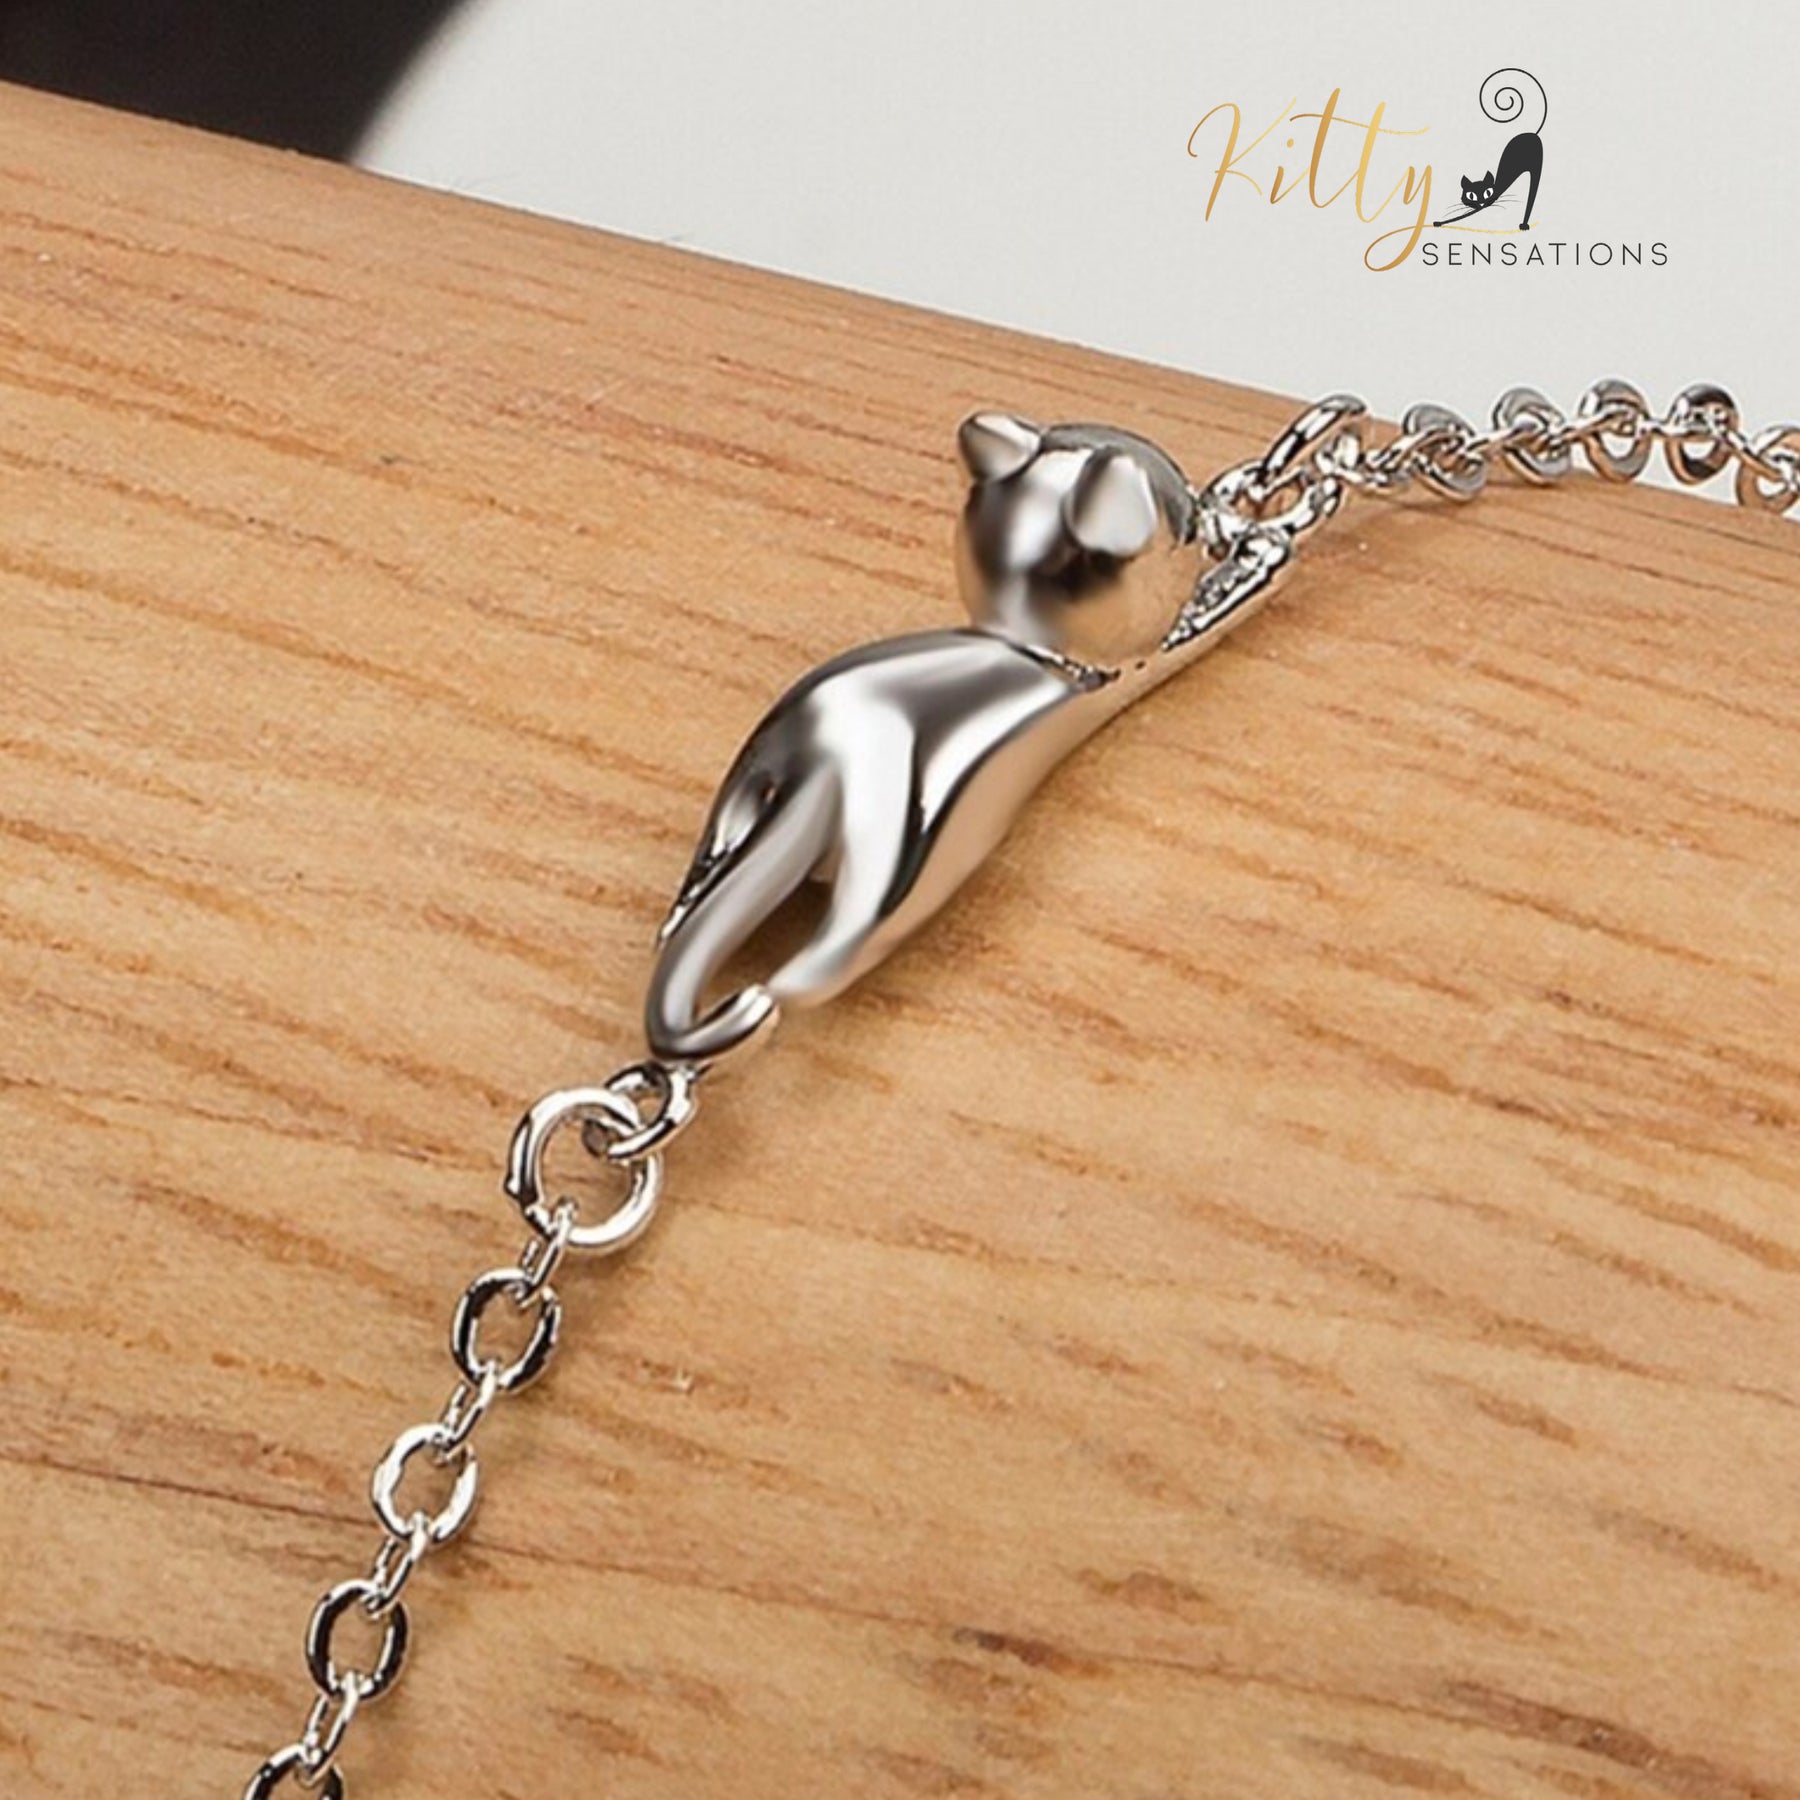 www.KittySensations.com: Hanging Cat Bracelet in Solid 925 Sterling Silver ($25.45): https://www.kittysensations.com/products/hanging-cat-bracelet-in-solid-925-sterling-silver